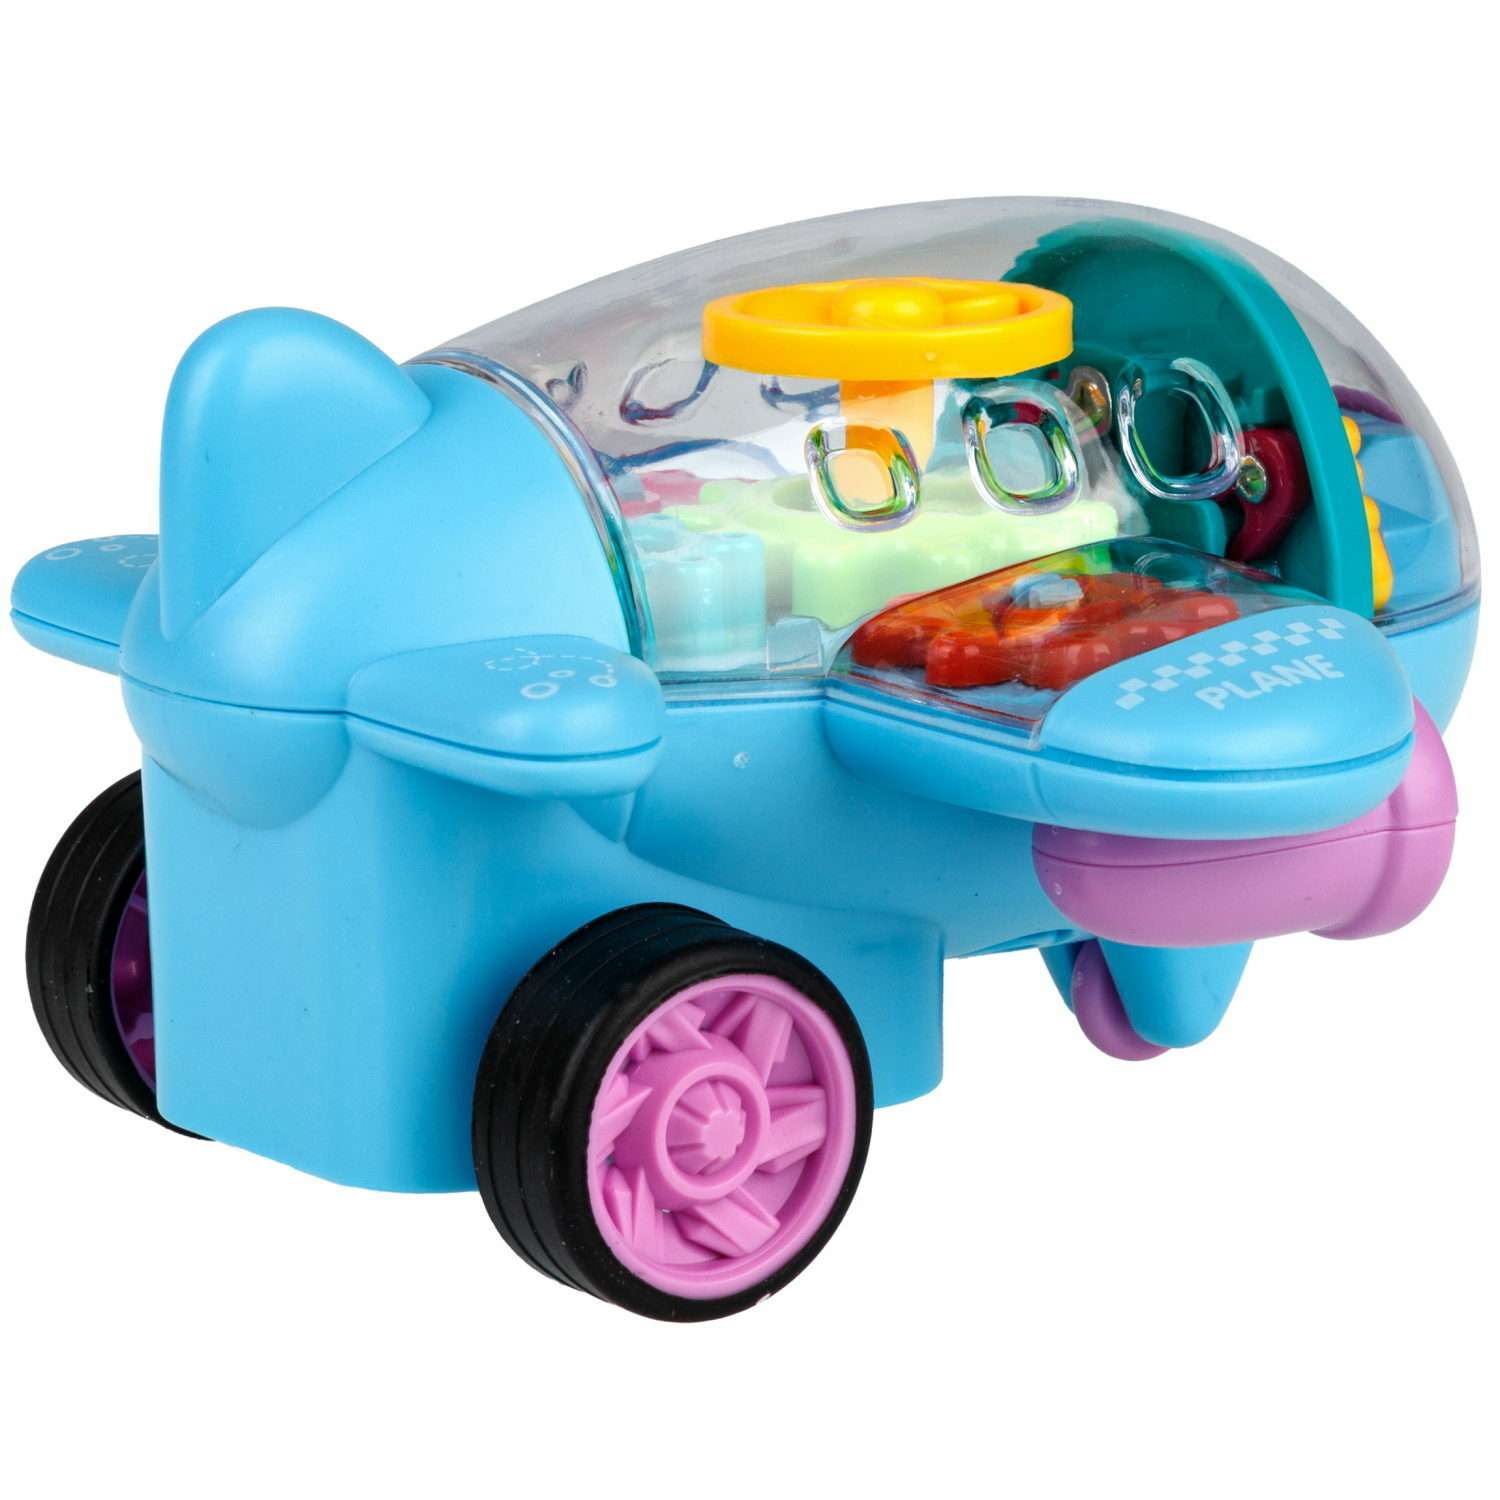 Самолет игрушка для детей 1TOY Движок голубой прозрачный с шестеренками светящийся на батарейках - фото 2